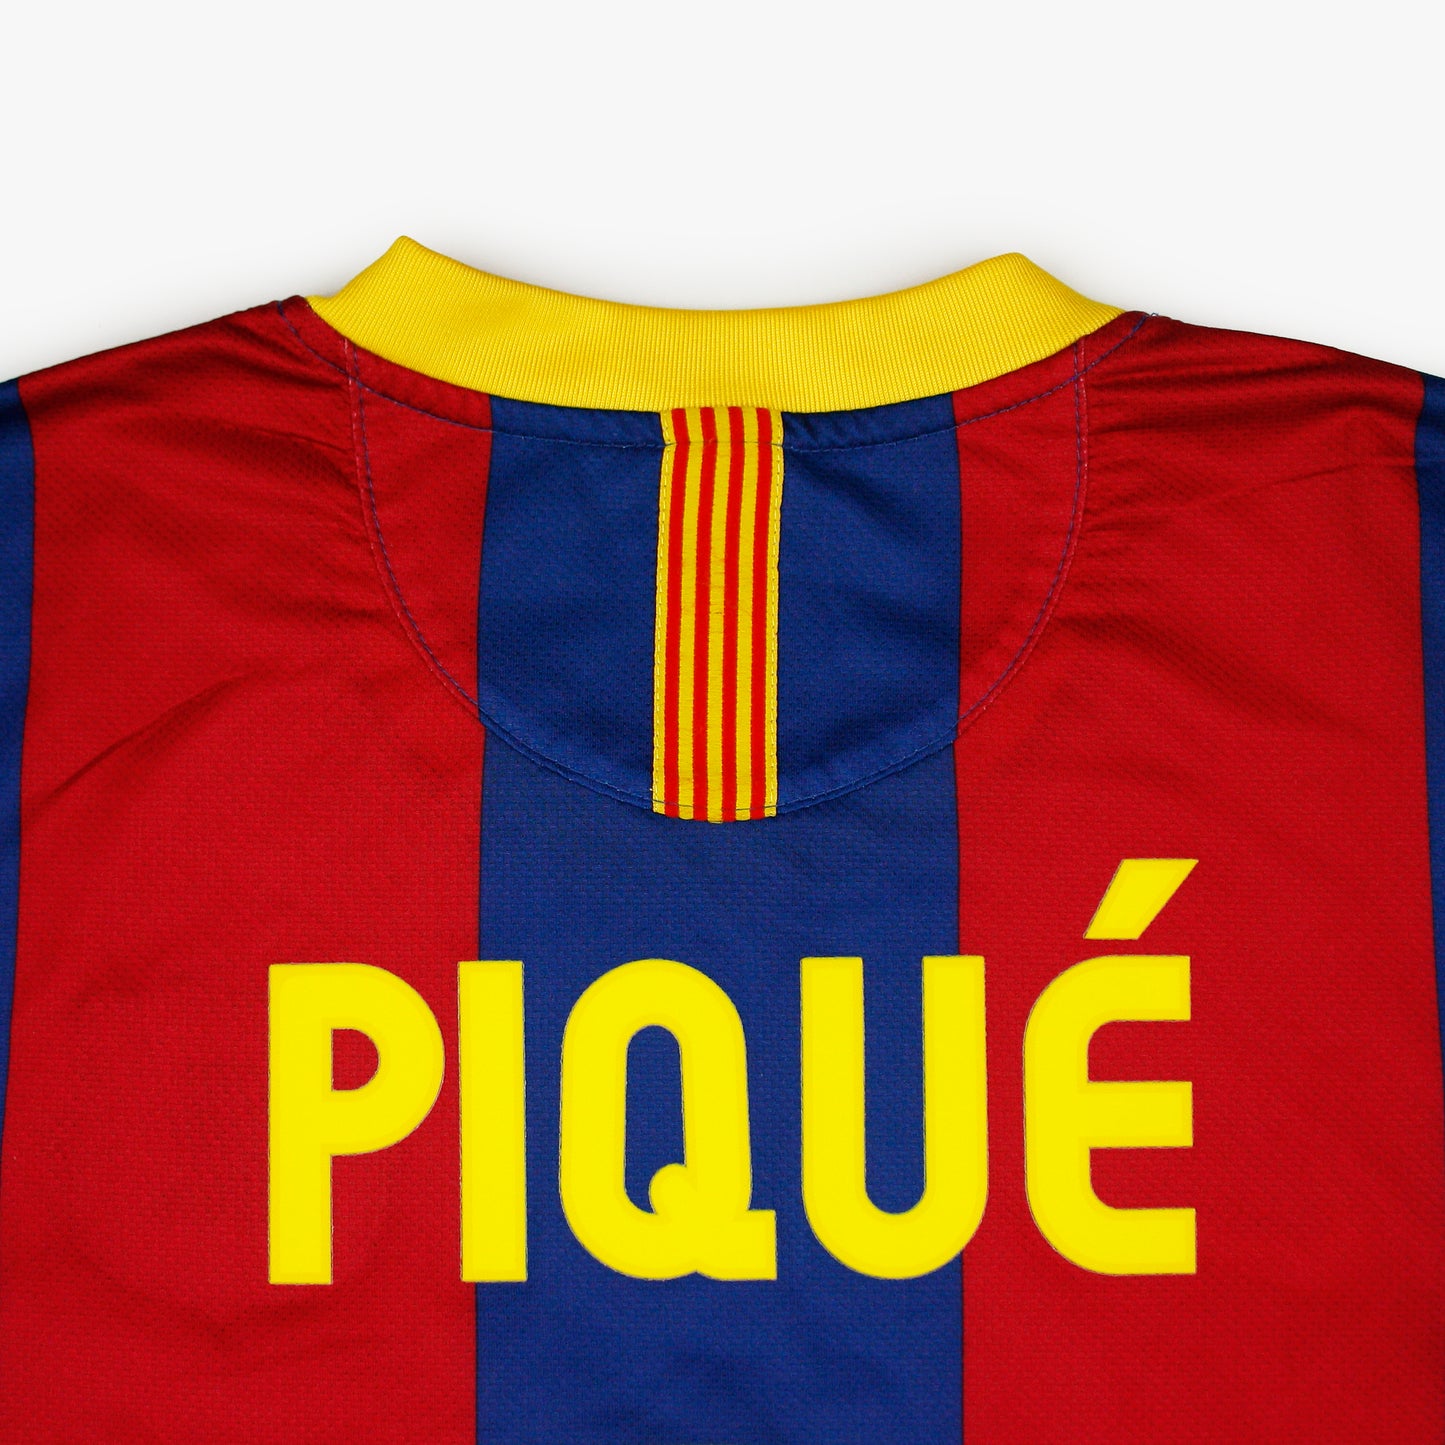 Barcelona 10/11 • Camiseta Local • M • Piqué #3